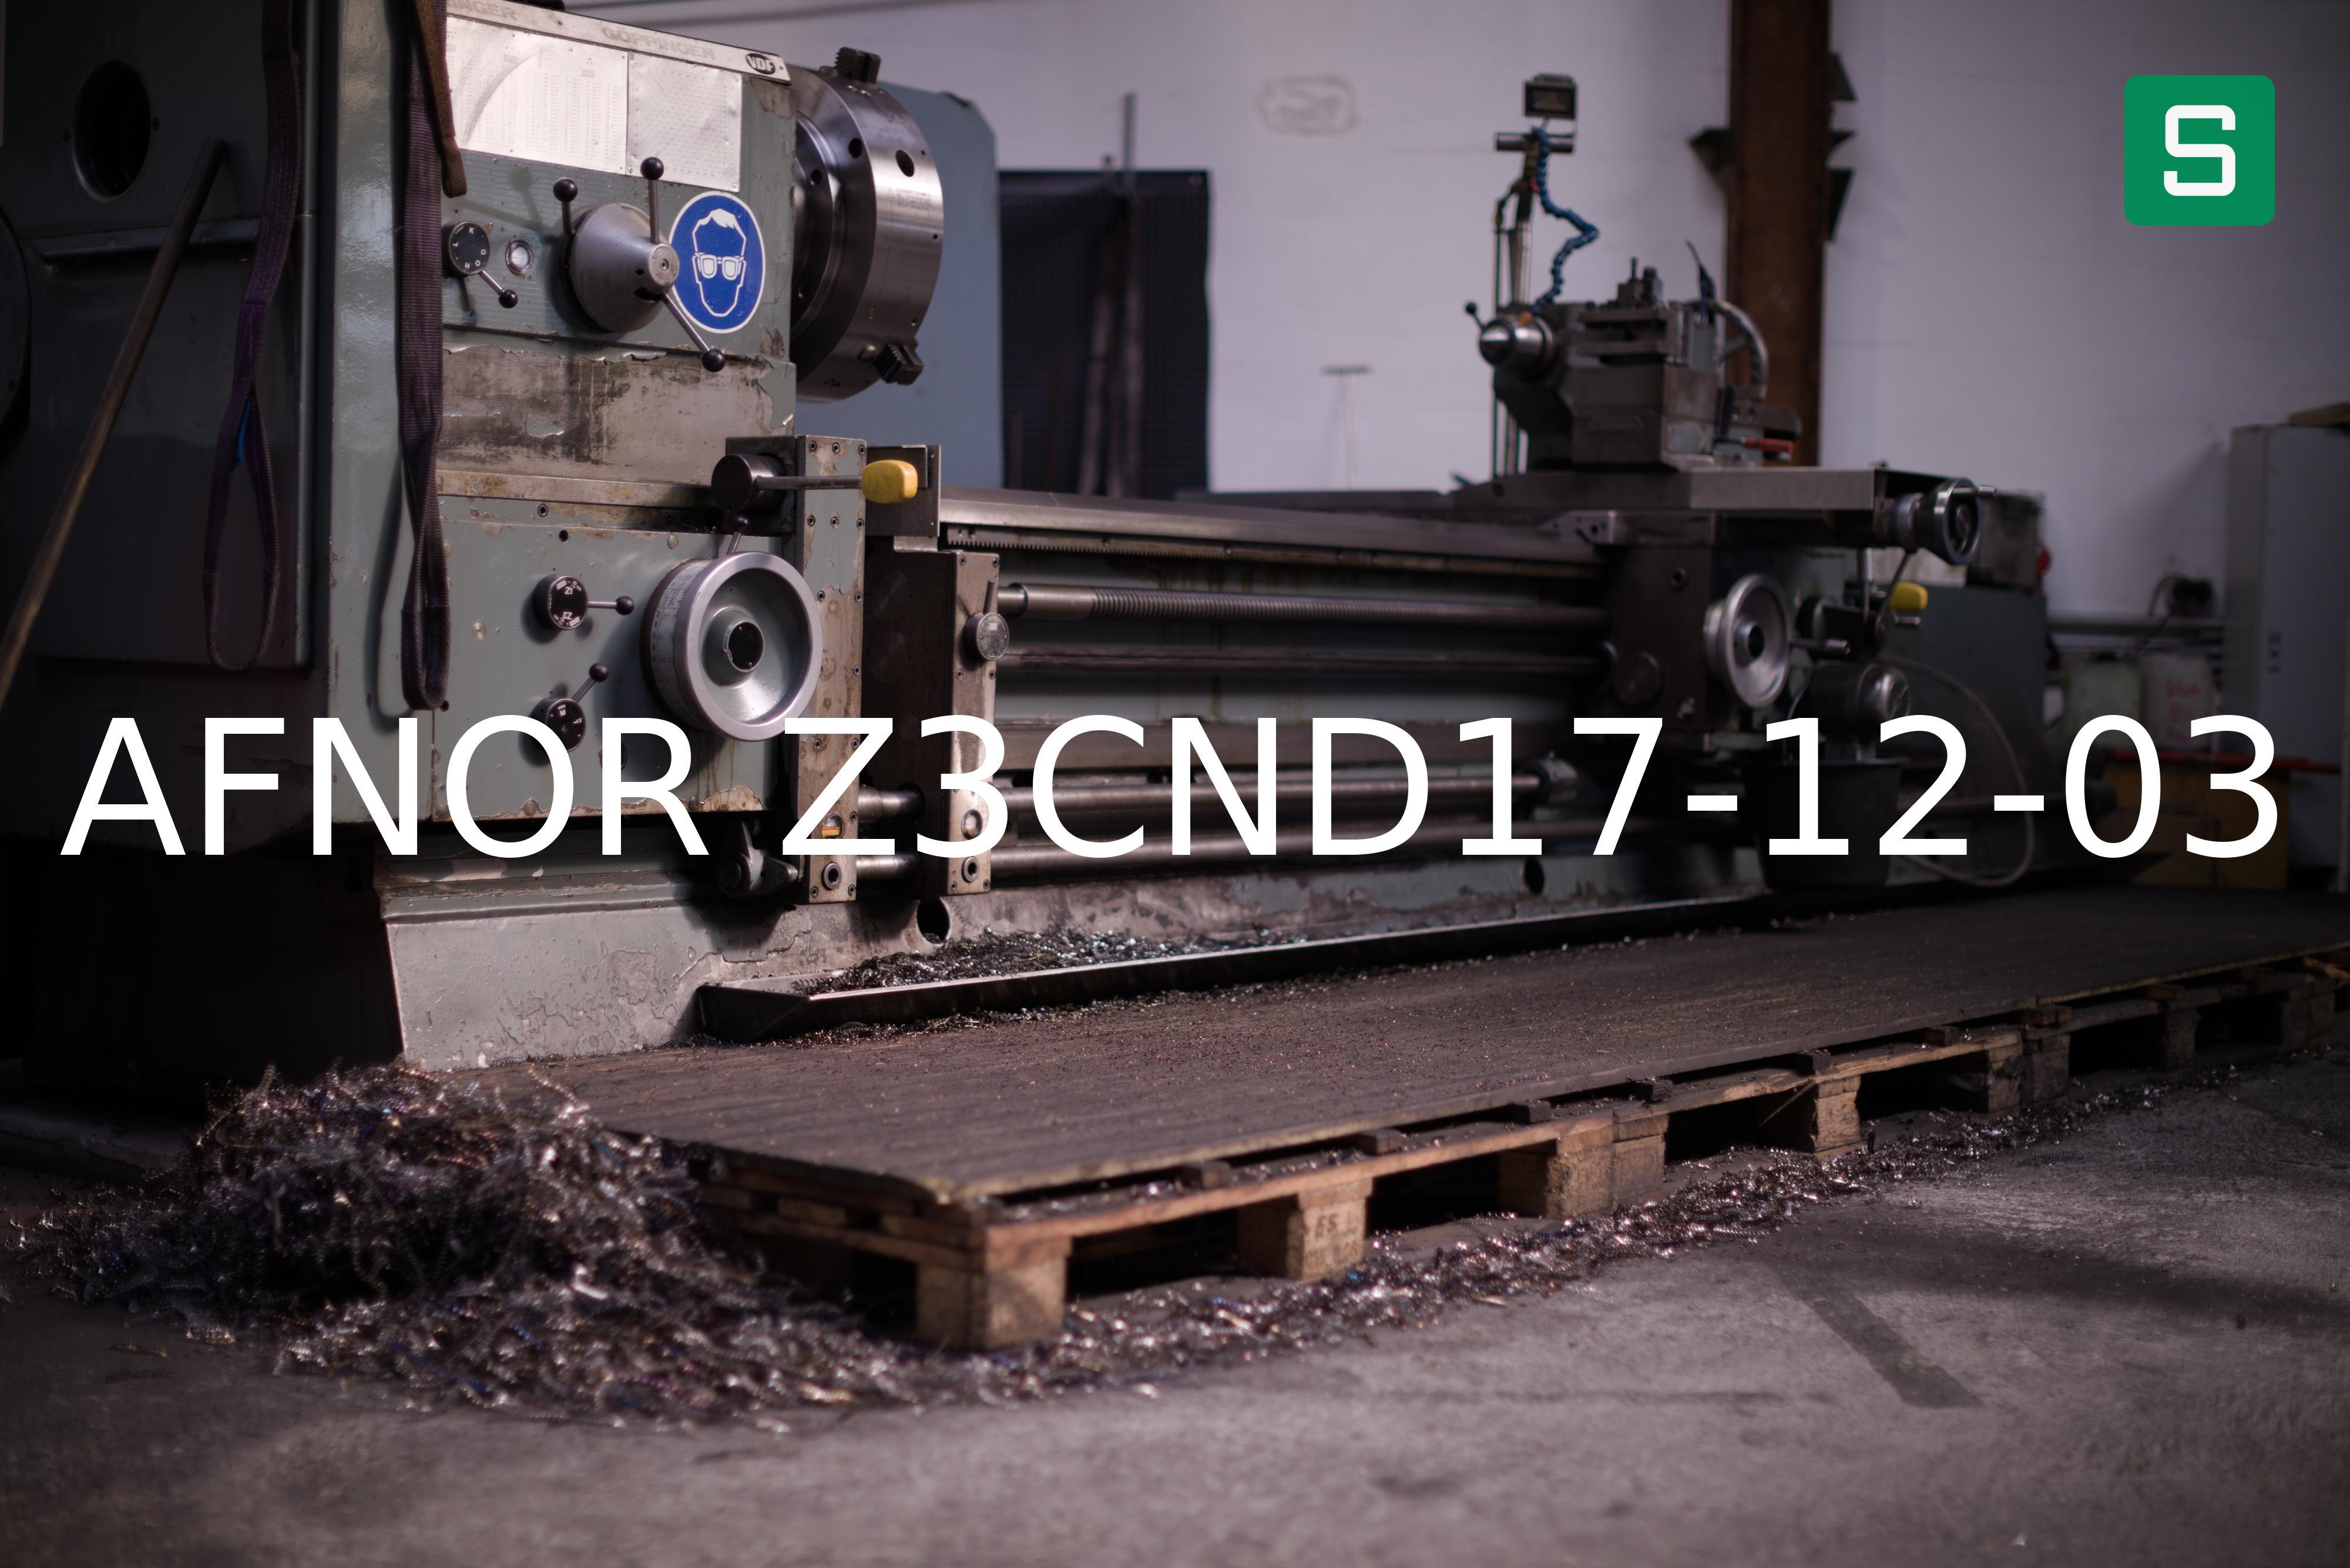 Steel Material: AFNOR Z3CND17-12-03